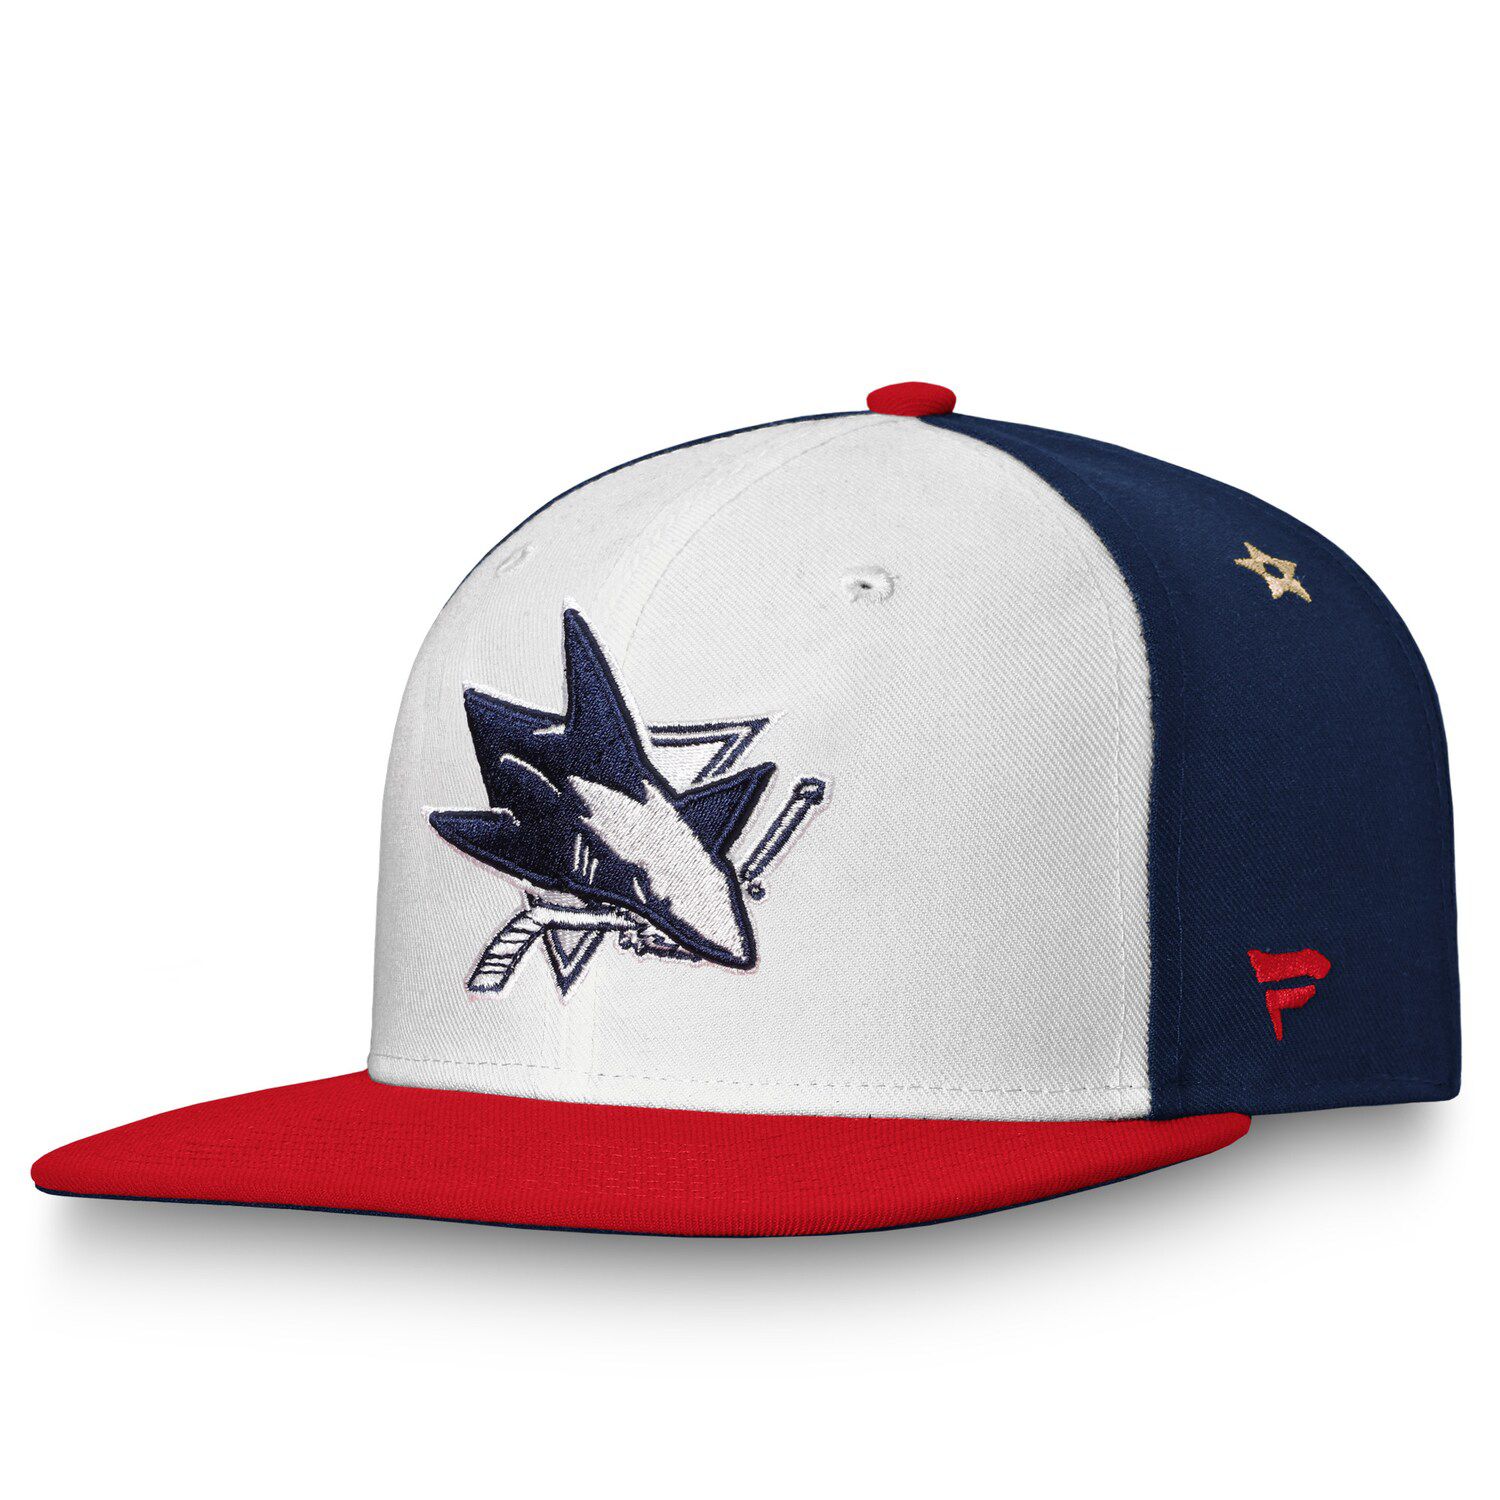 Americana Adjustable Snapback Hat